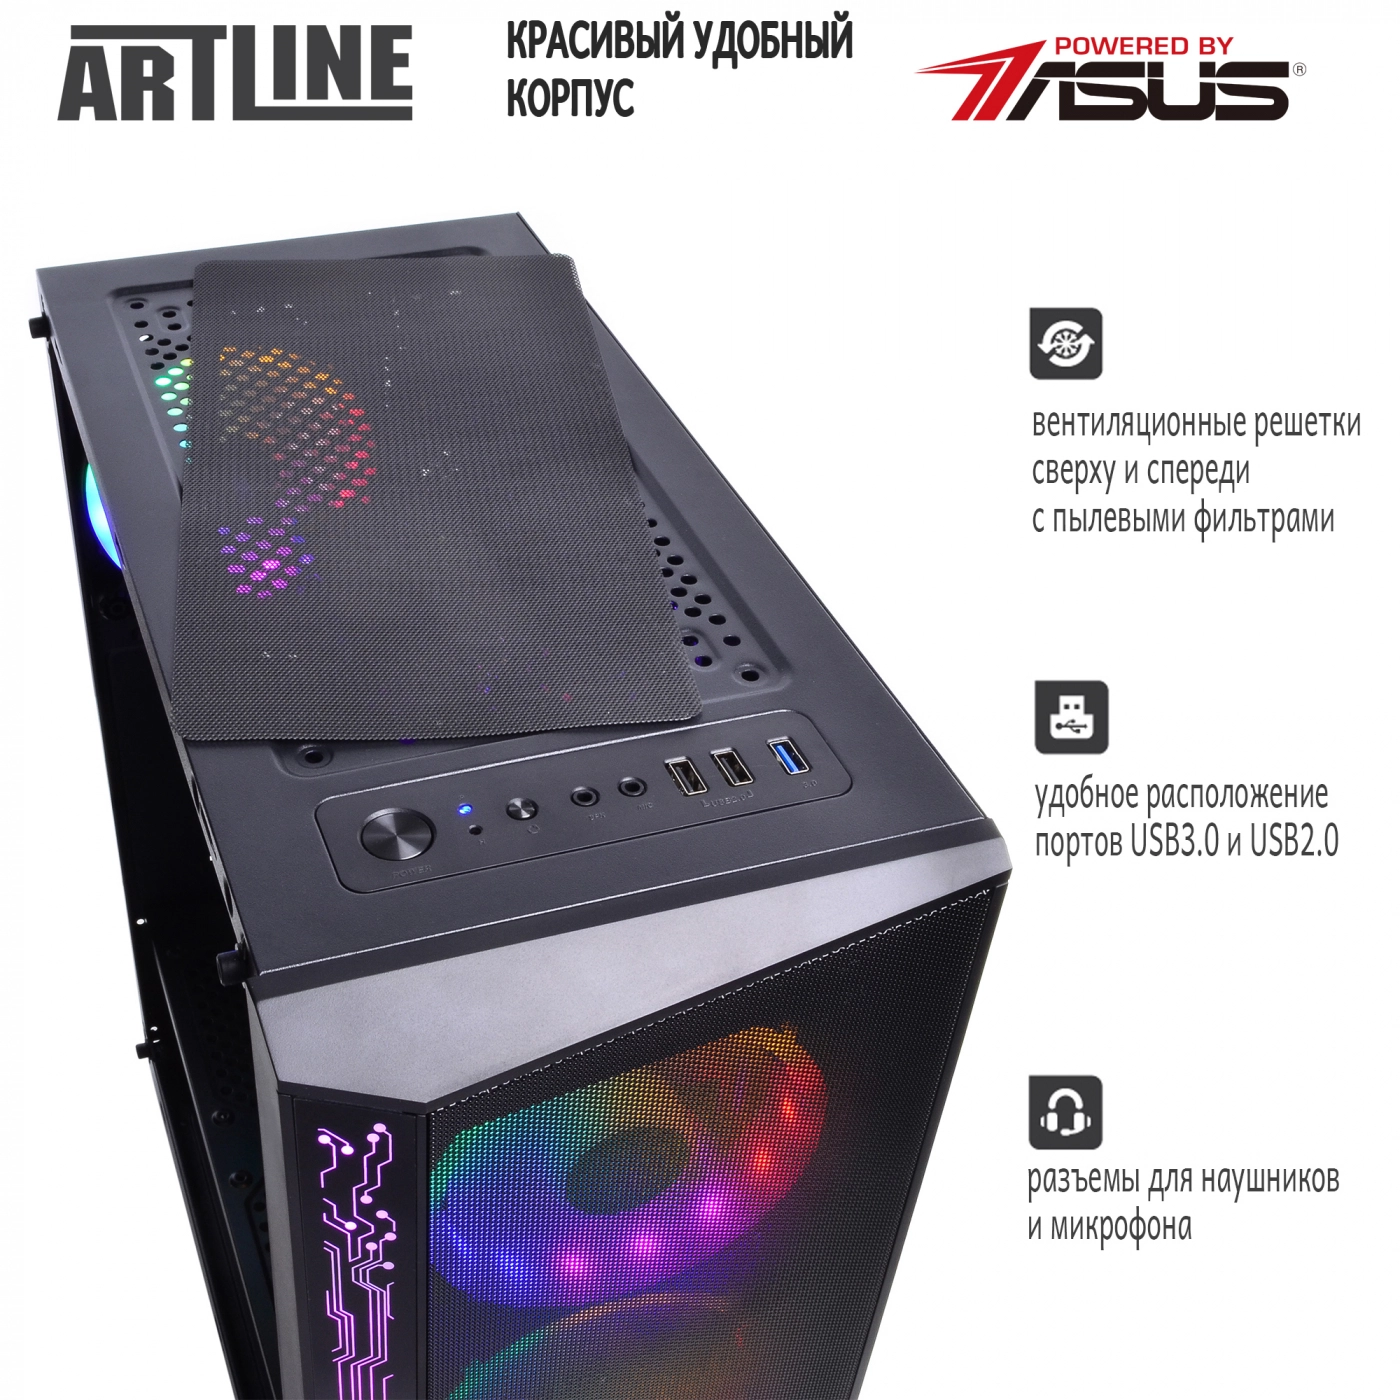 Купить Компьютер ARTLINE Gaming X48v07 - фото 4